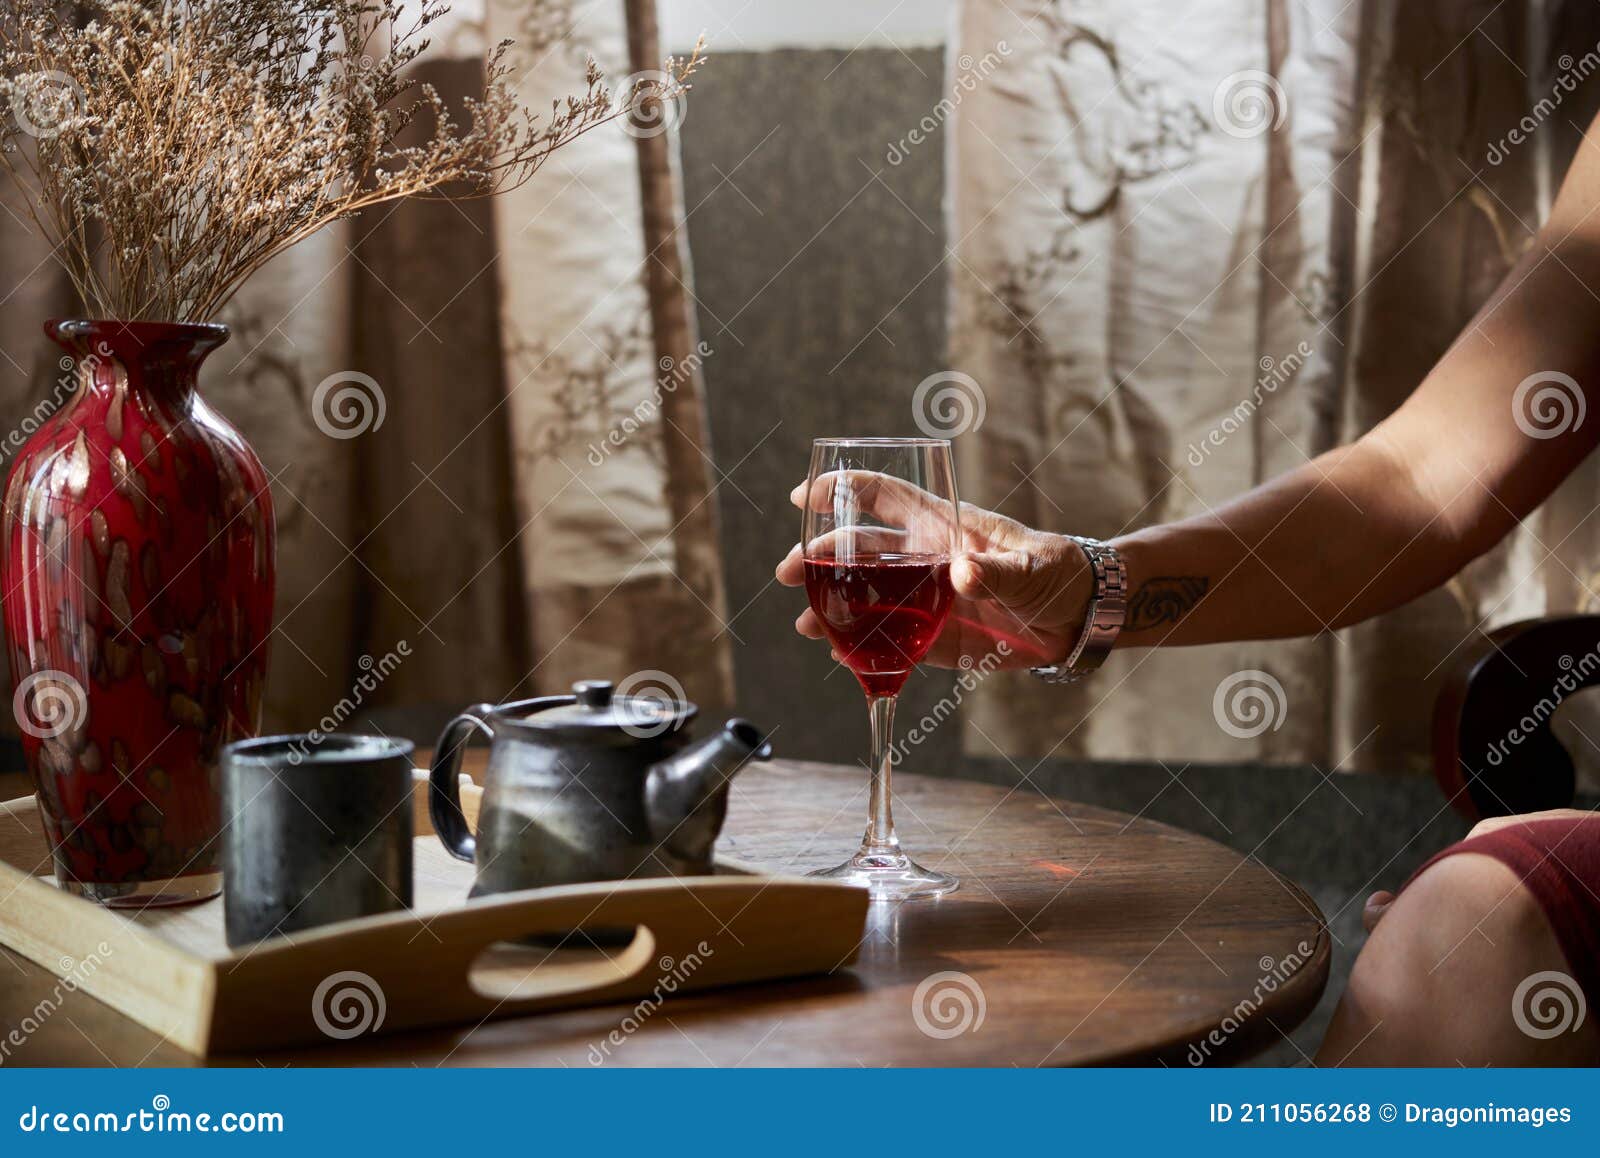 紫色的女人在清澈的酒杯上喝酒-千叶网